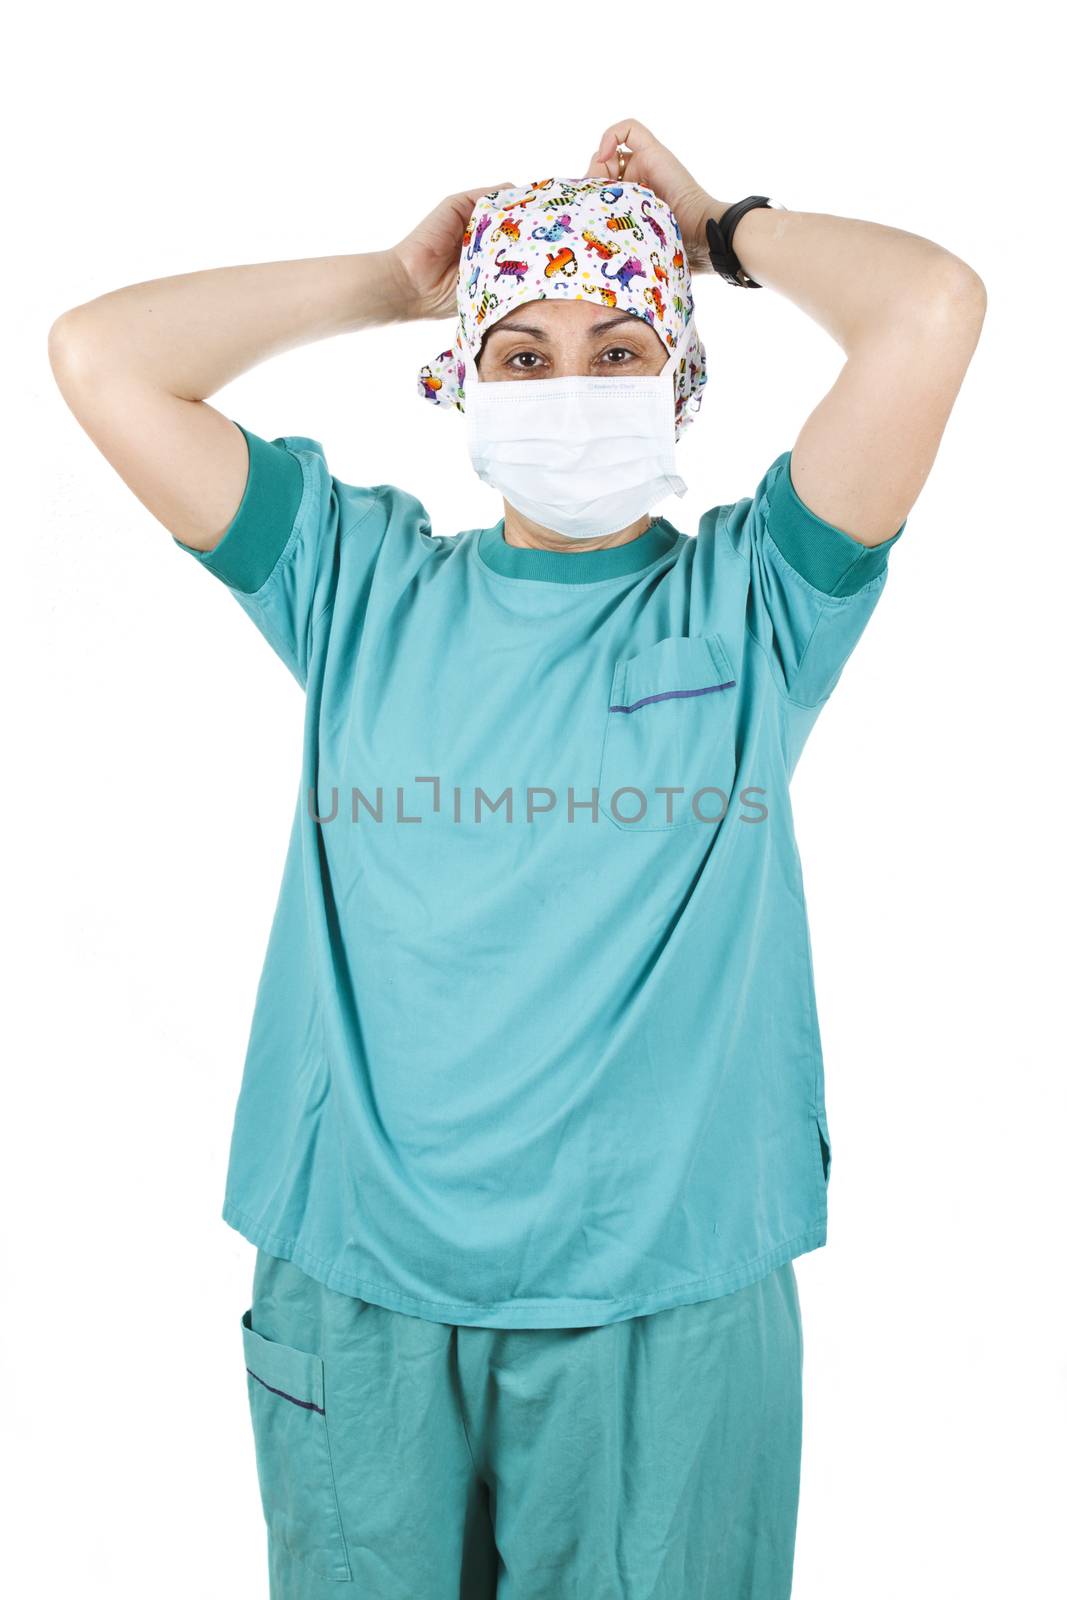 Female nurse putting on her mask, isolated on white background.